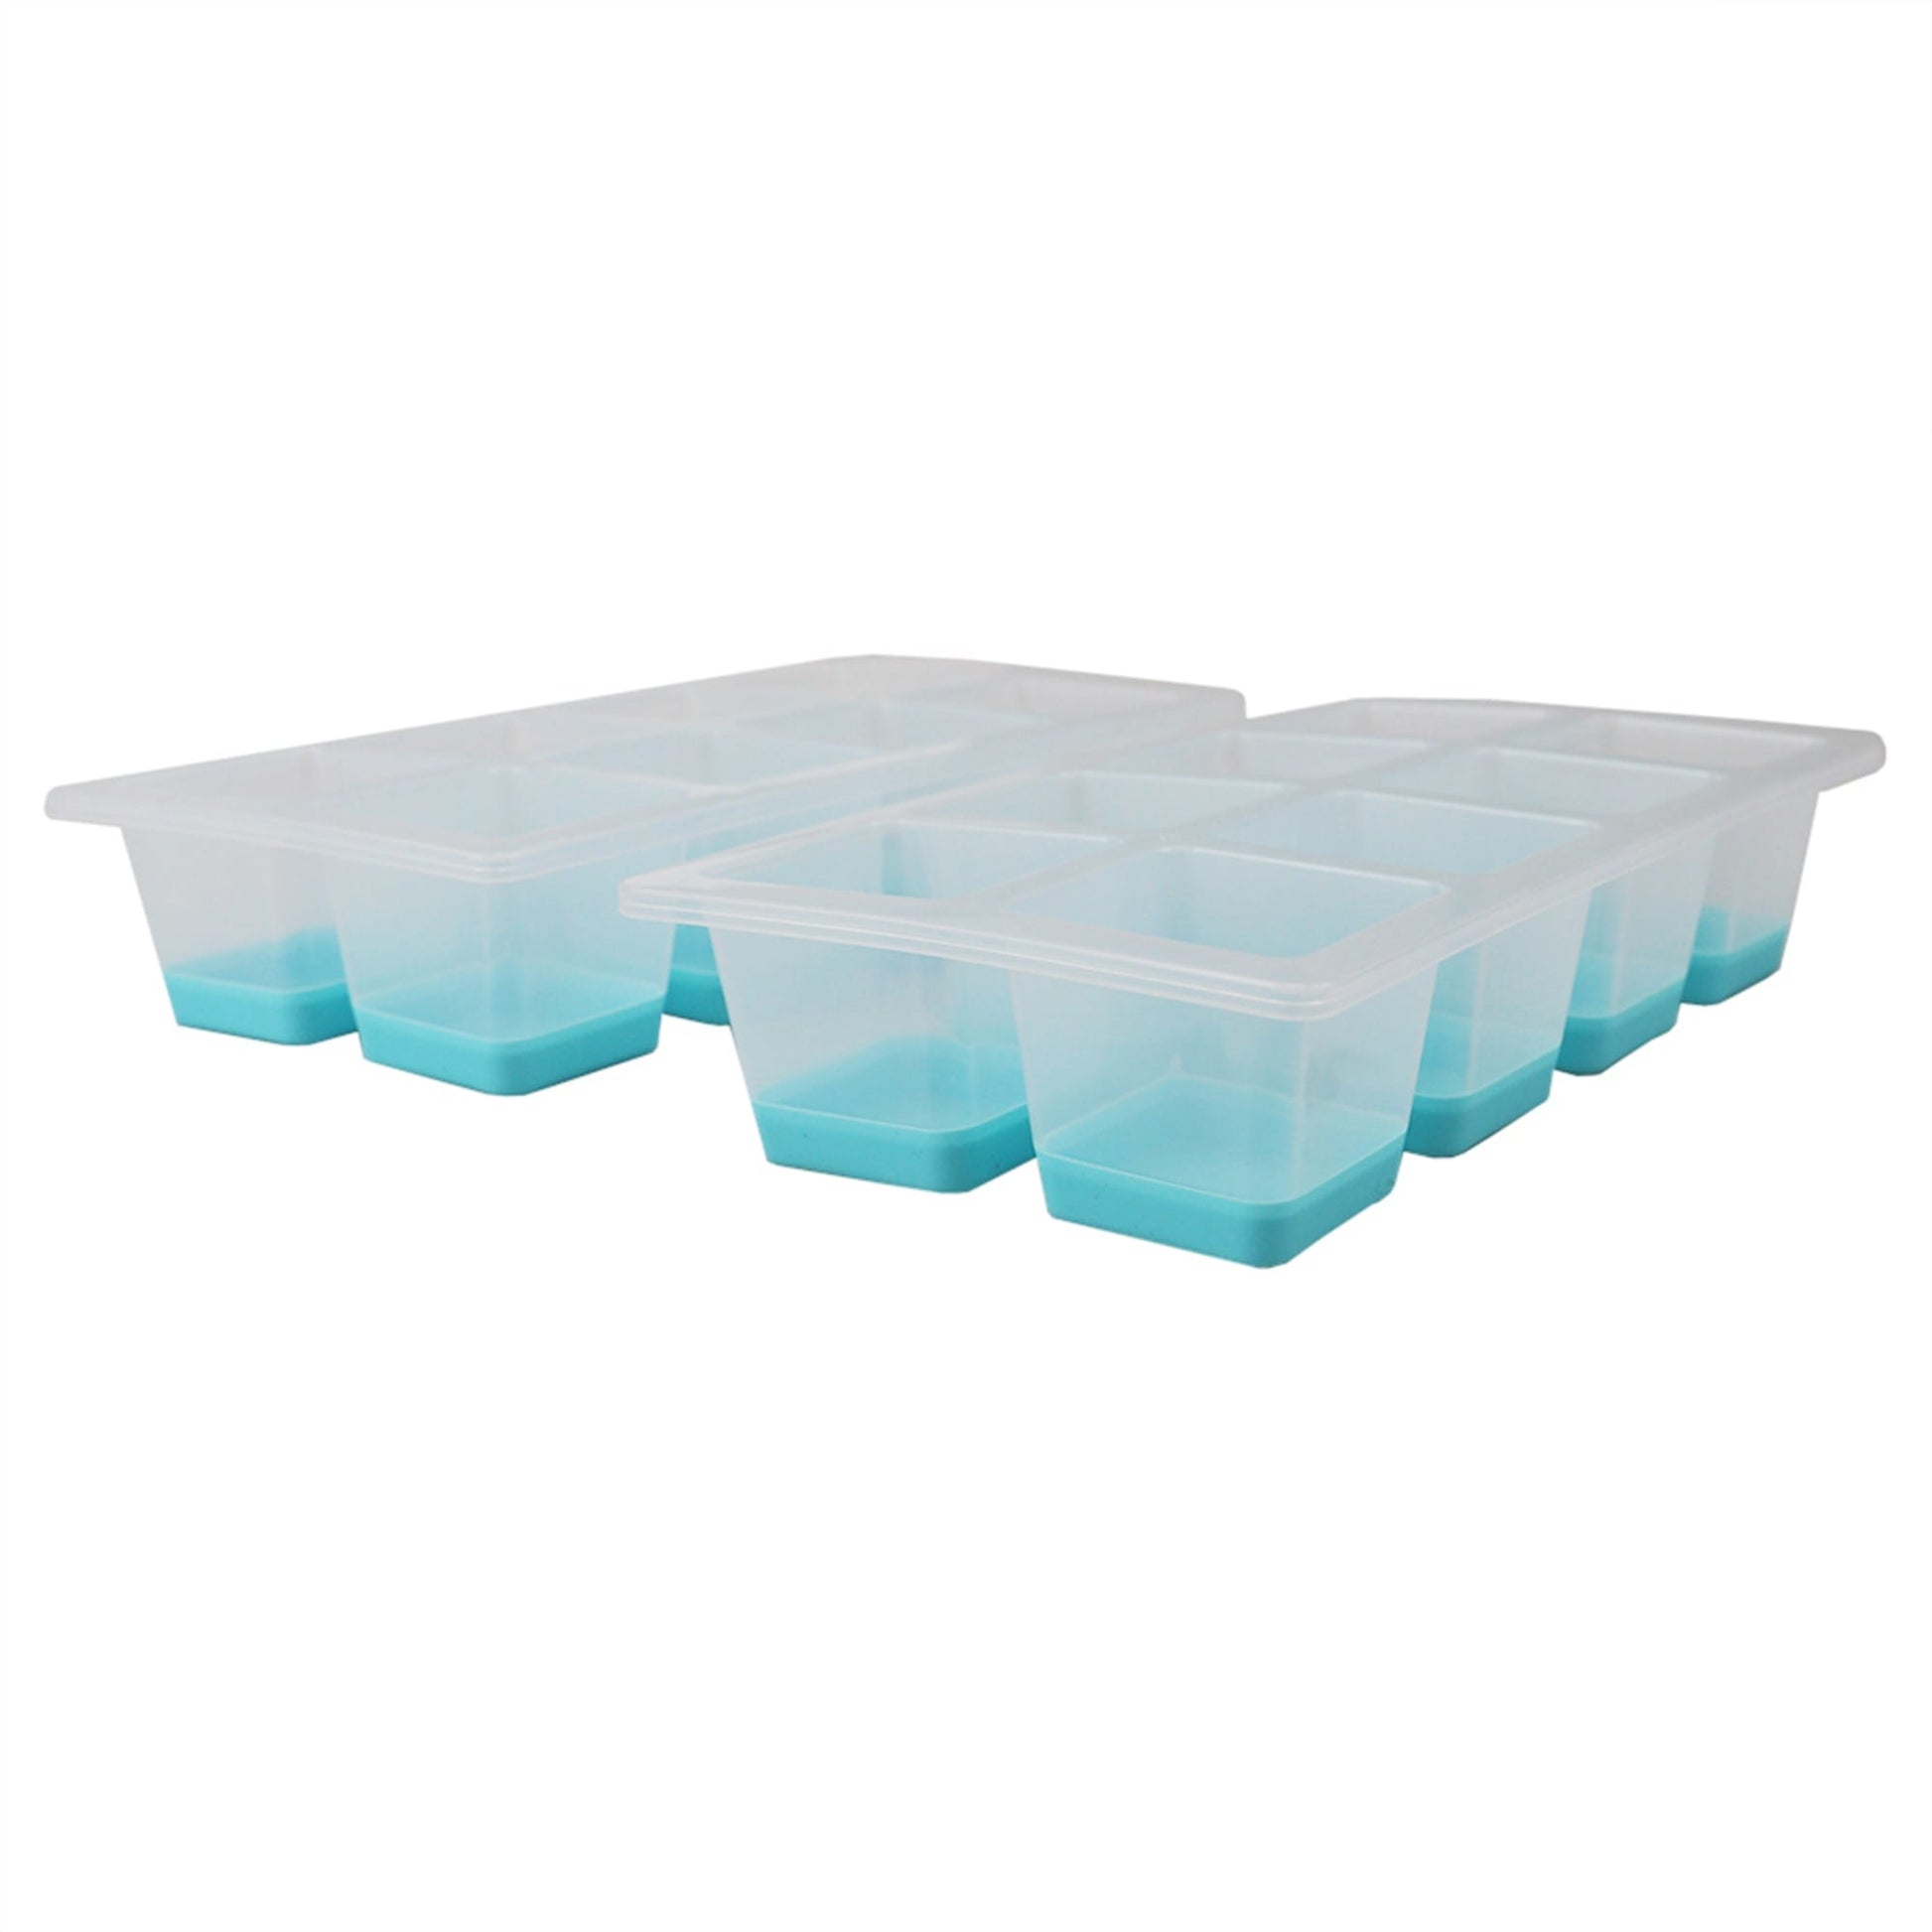 Handy Housewares 2 Jumbo Silicone Push Ice Cube Tray - Makes 8 Large